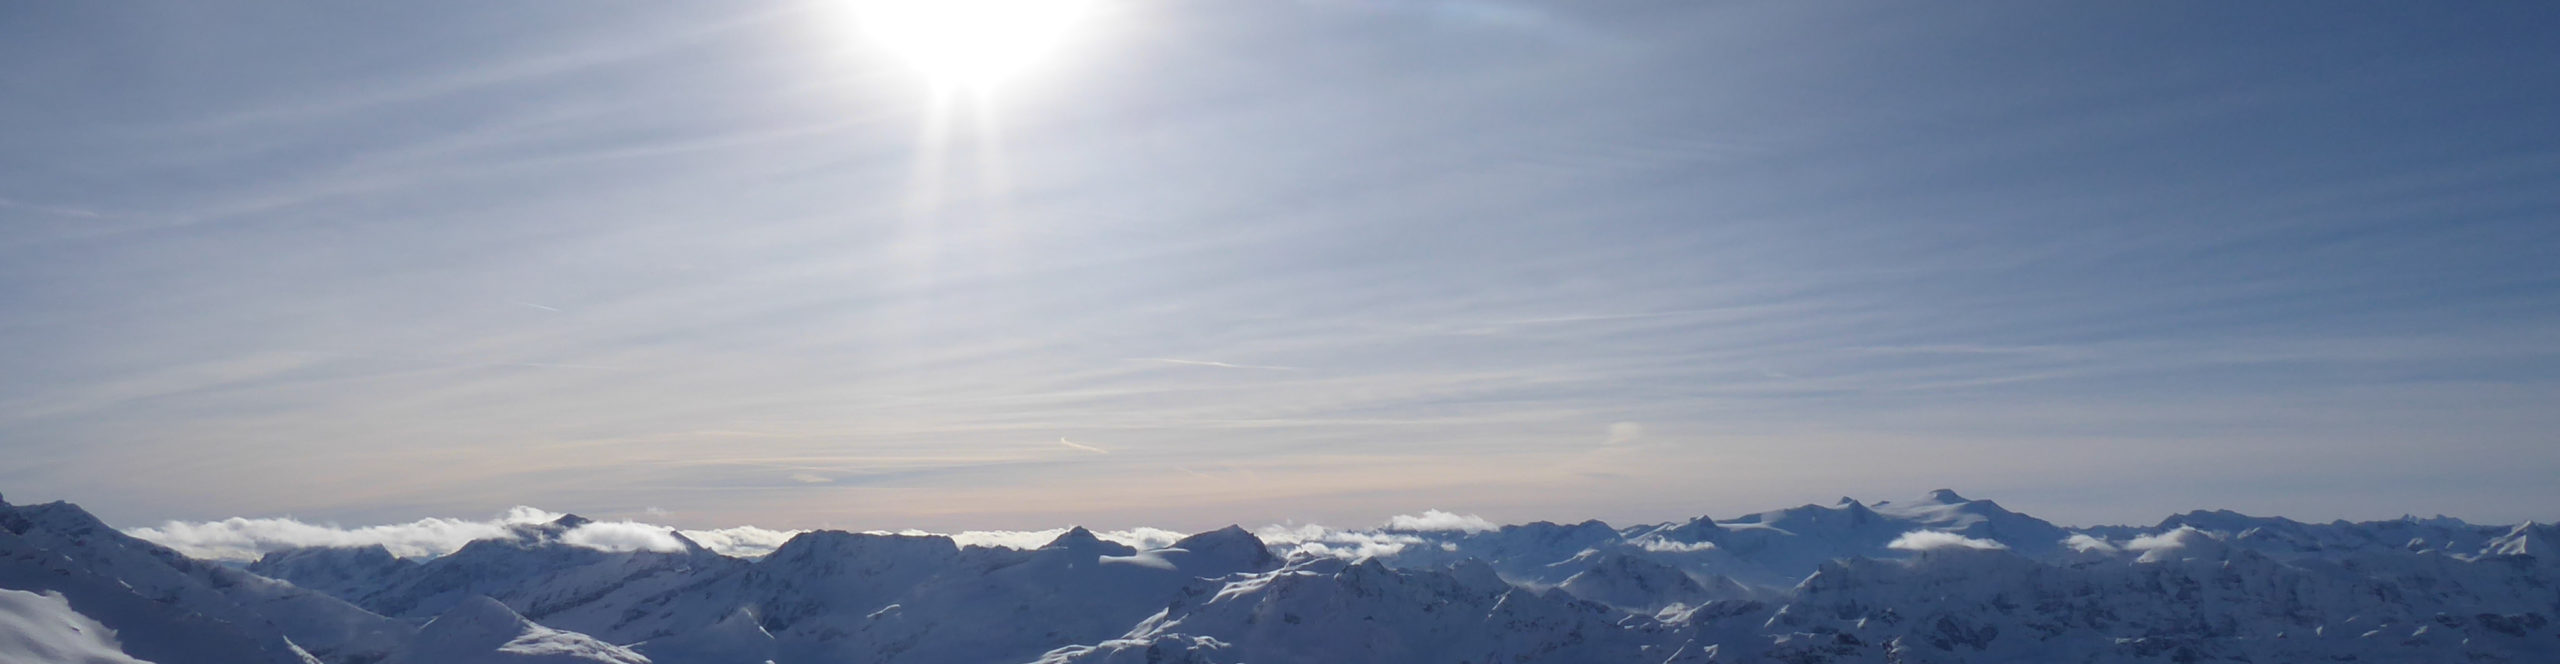 KAPRUN – ZELL AM SEE – Skiwochenende mit Schneegarantie – 3 Sterne – Schritte von der Gondel – Wellness über den Wolken mit drei Skitagen 